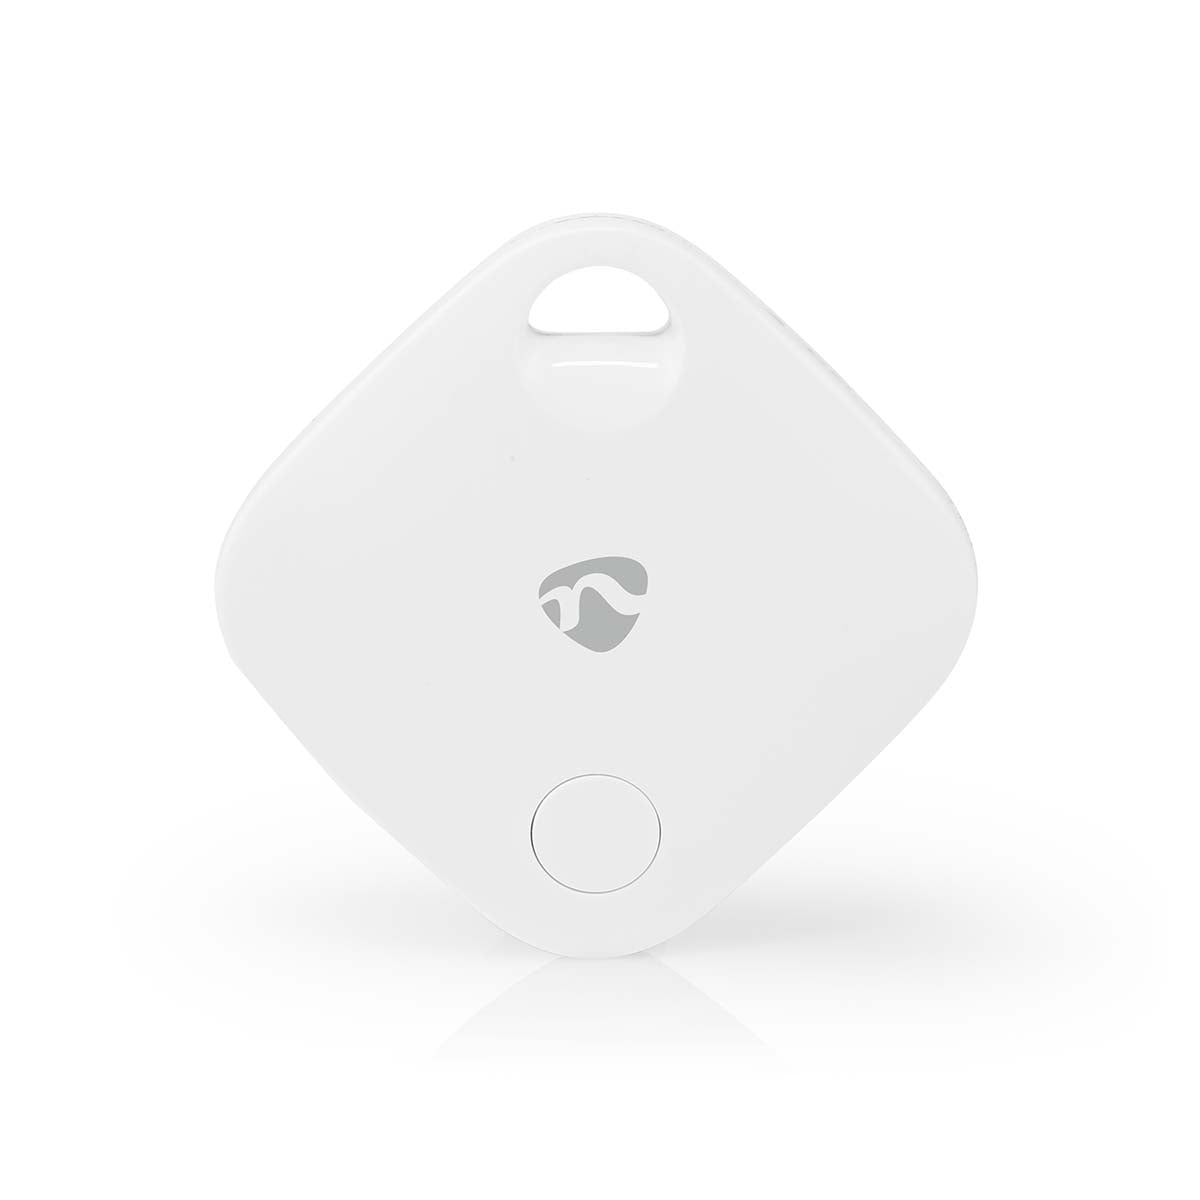 Schlüsselfinder Tracker Bluetooth Geräteortung Lokal und Global mit App Anhänger